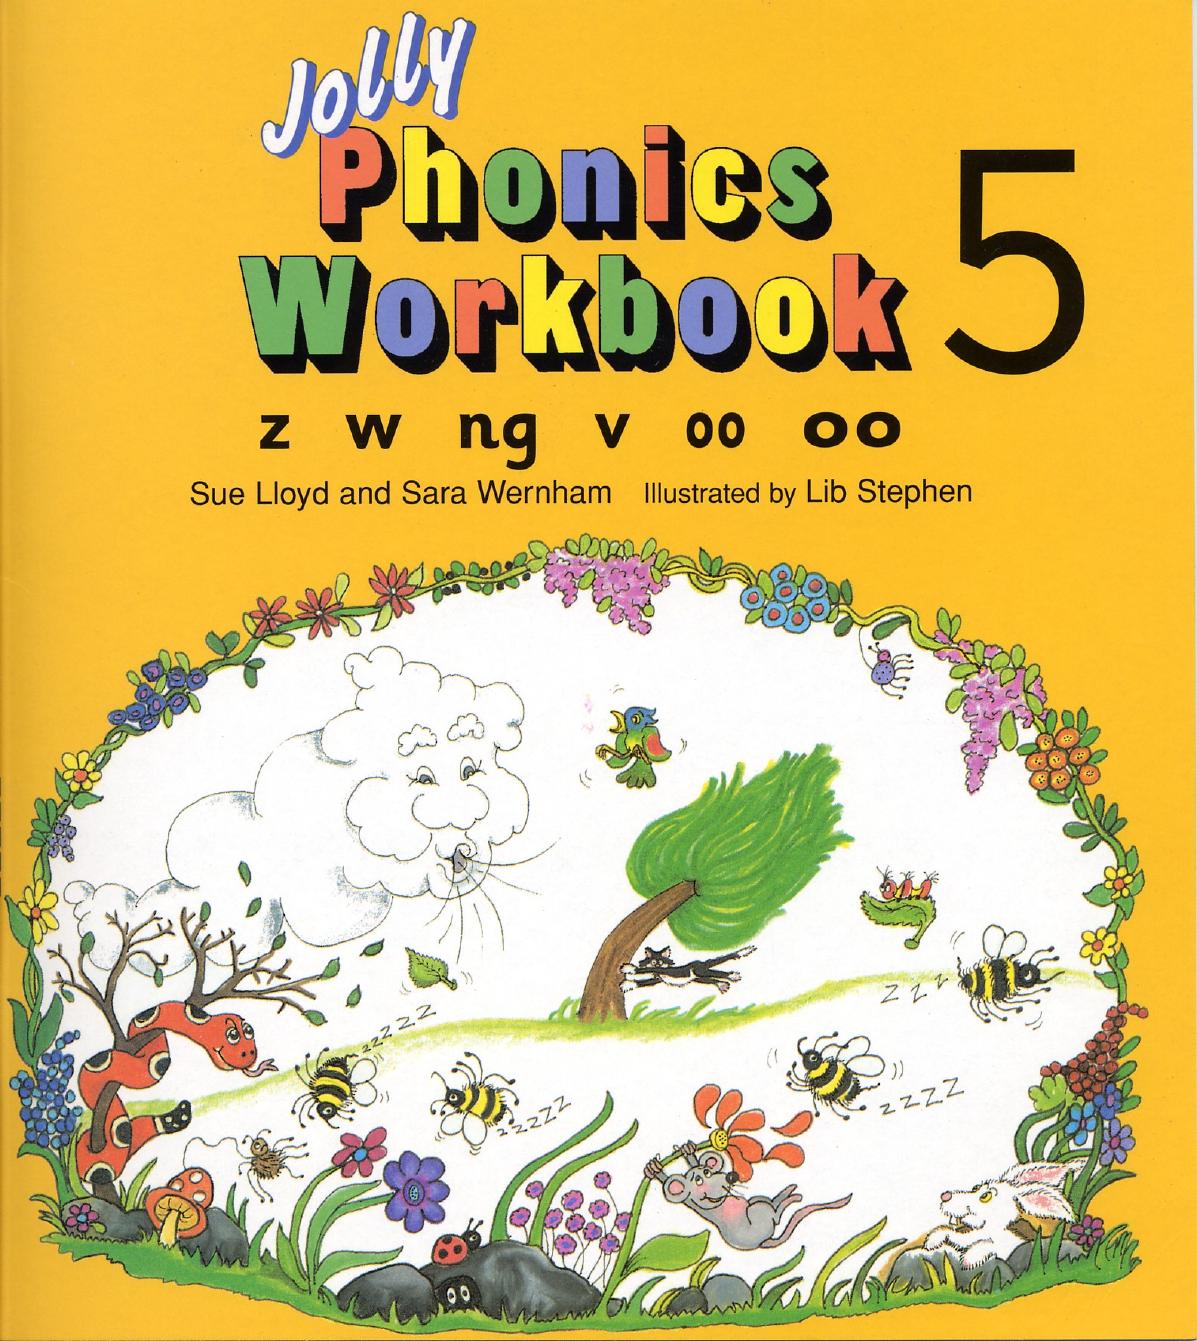 Jolly Phonics Workbook 5 By Sue Lloyd Pdf Epub Free Download